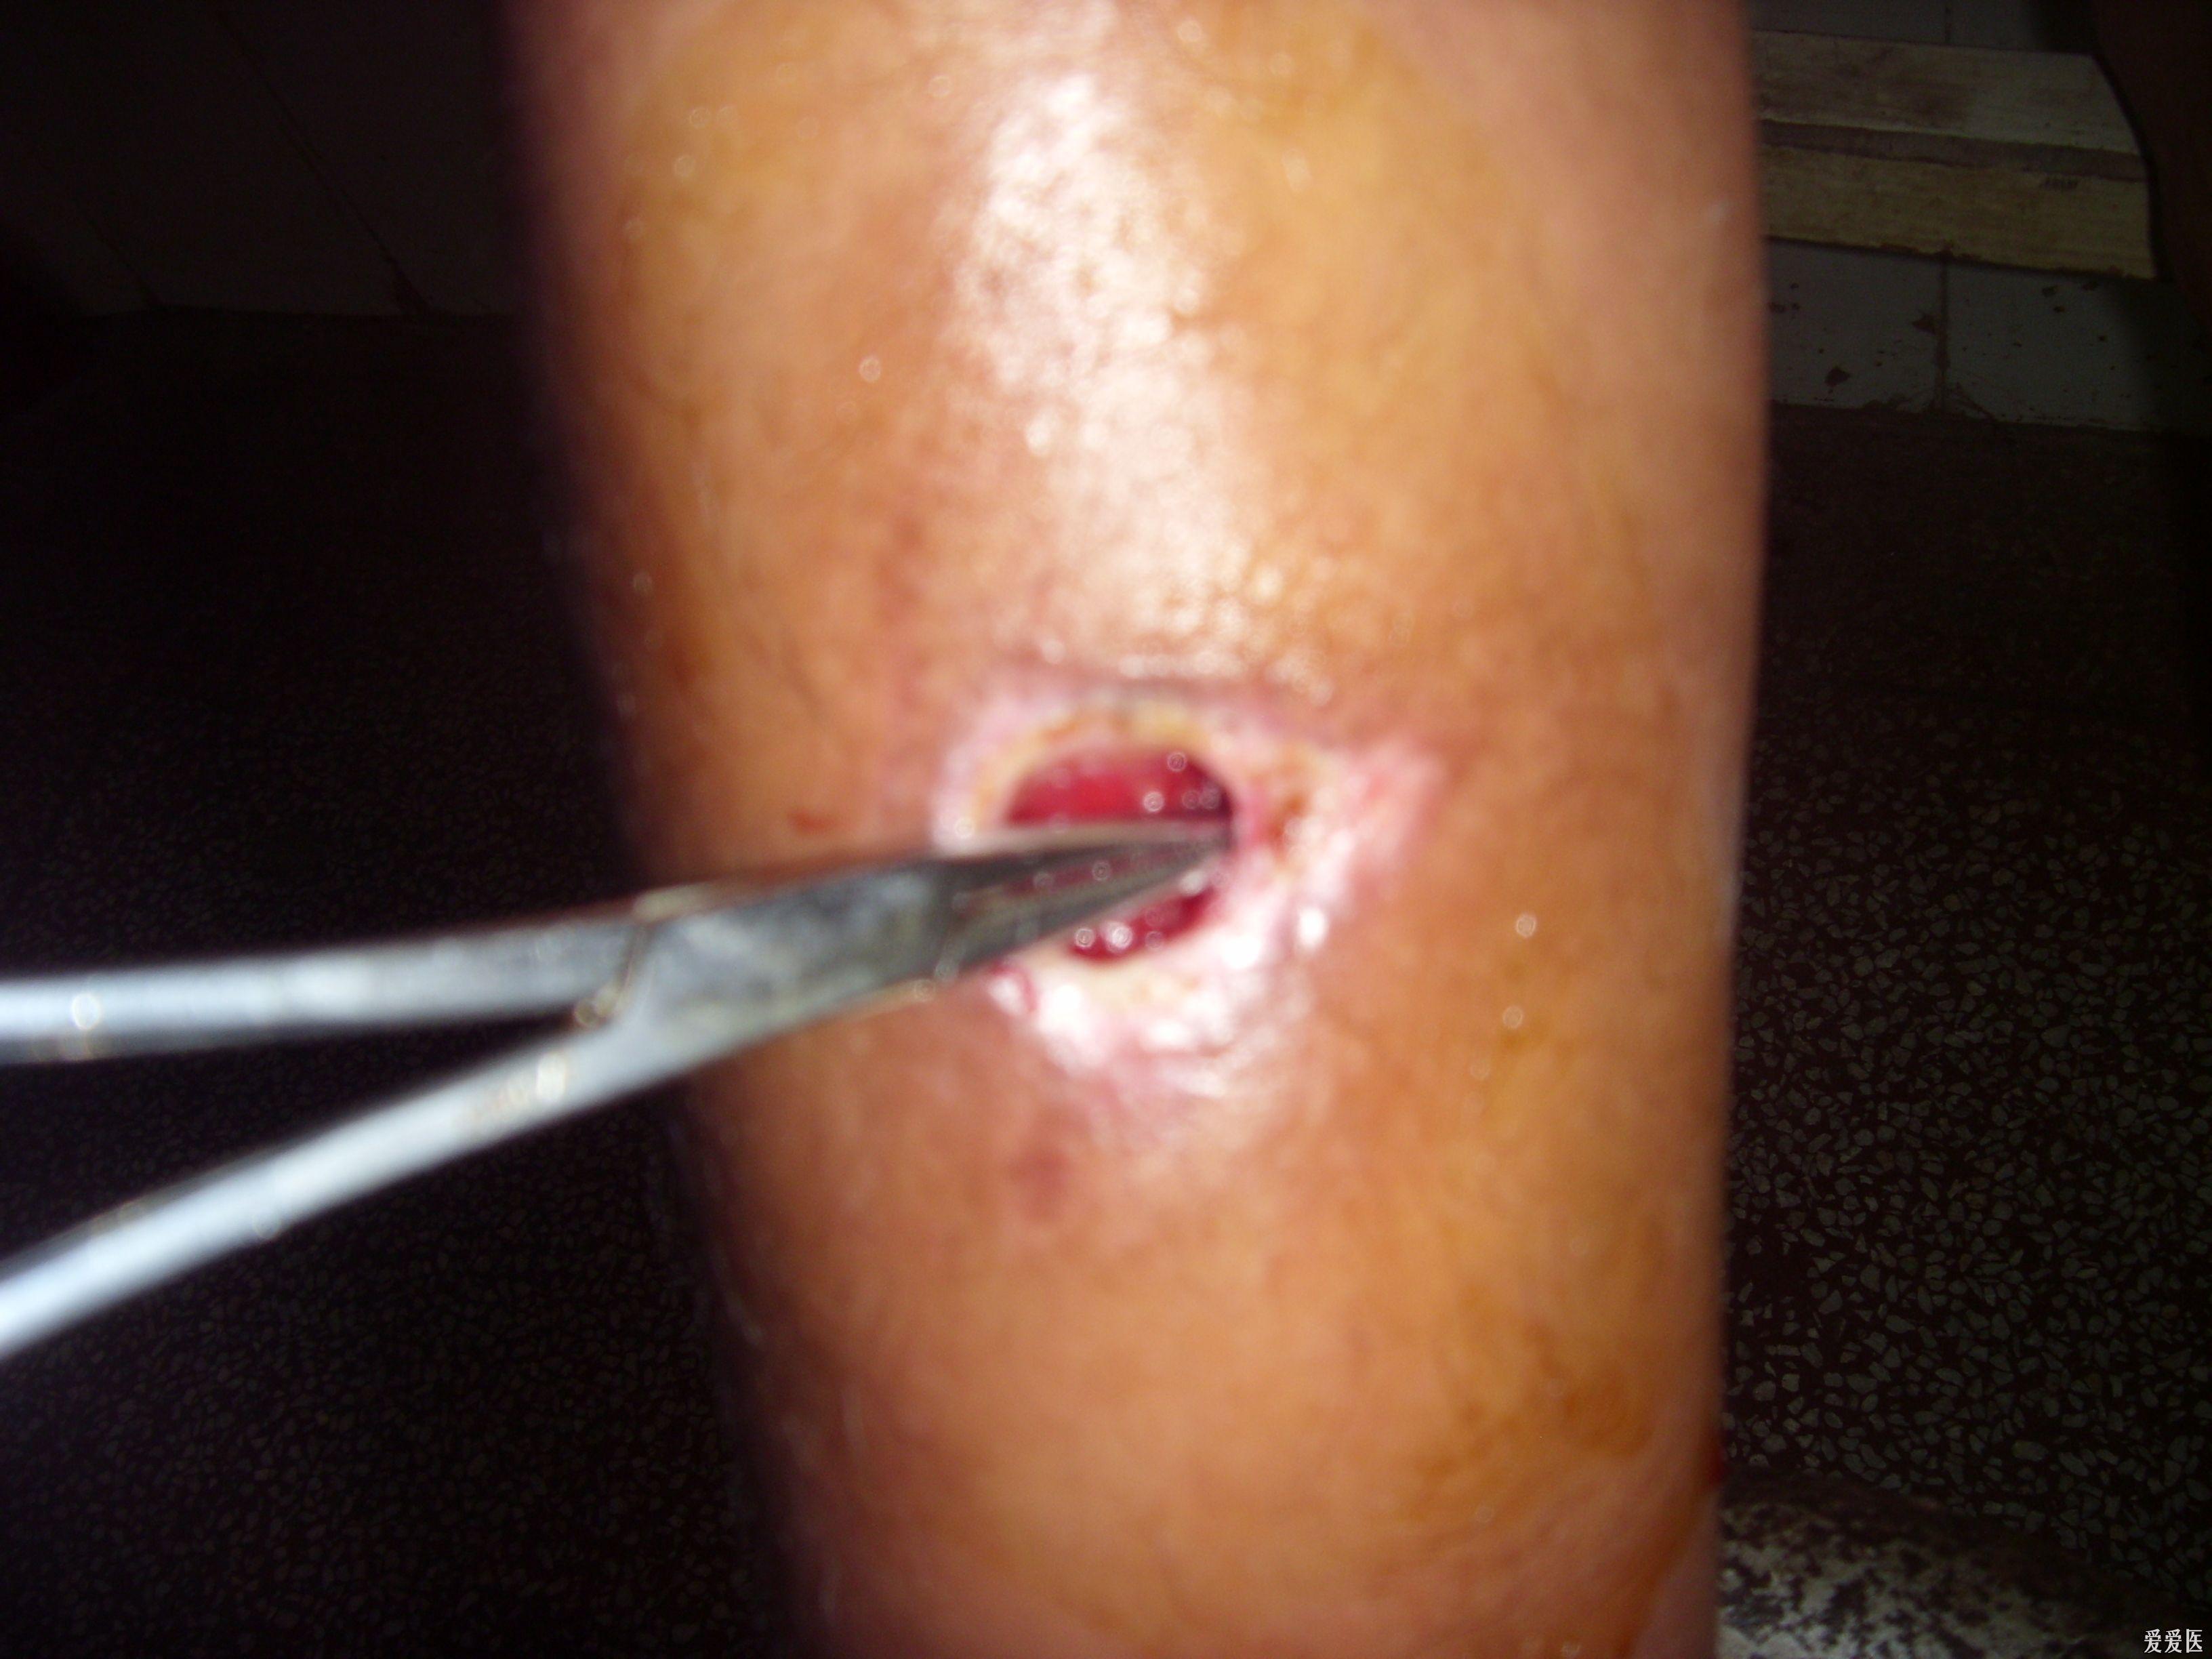 患者,女,14岁,因发生碰撞致右小腿前内侧出现一伤口,在小诊所换药